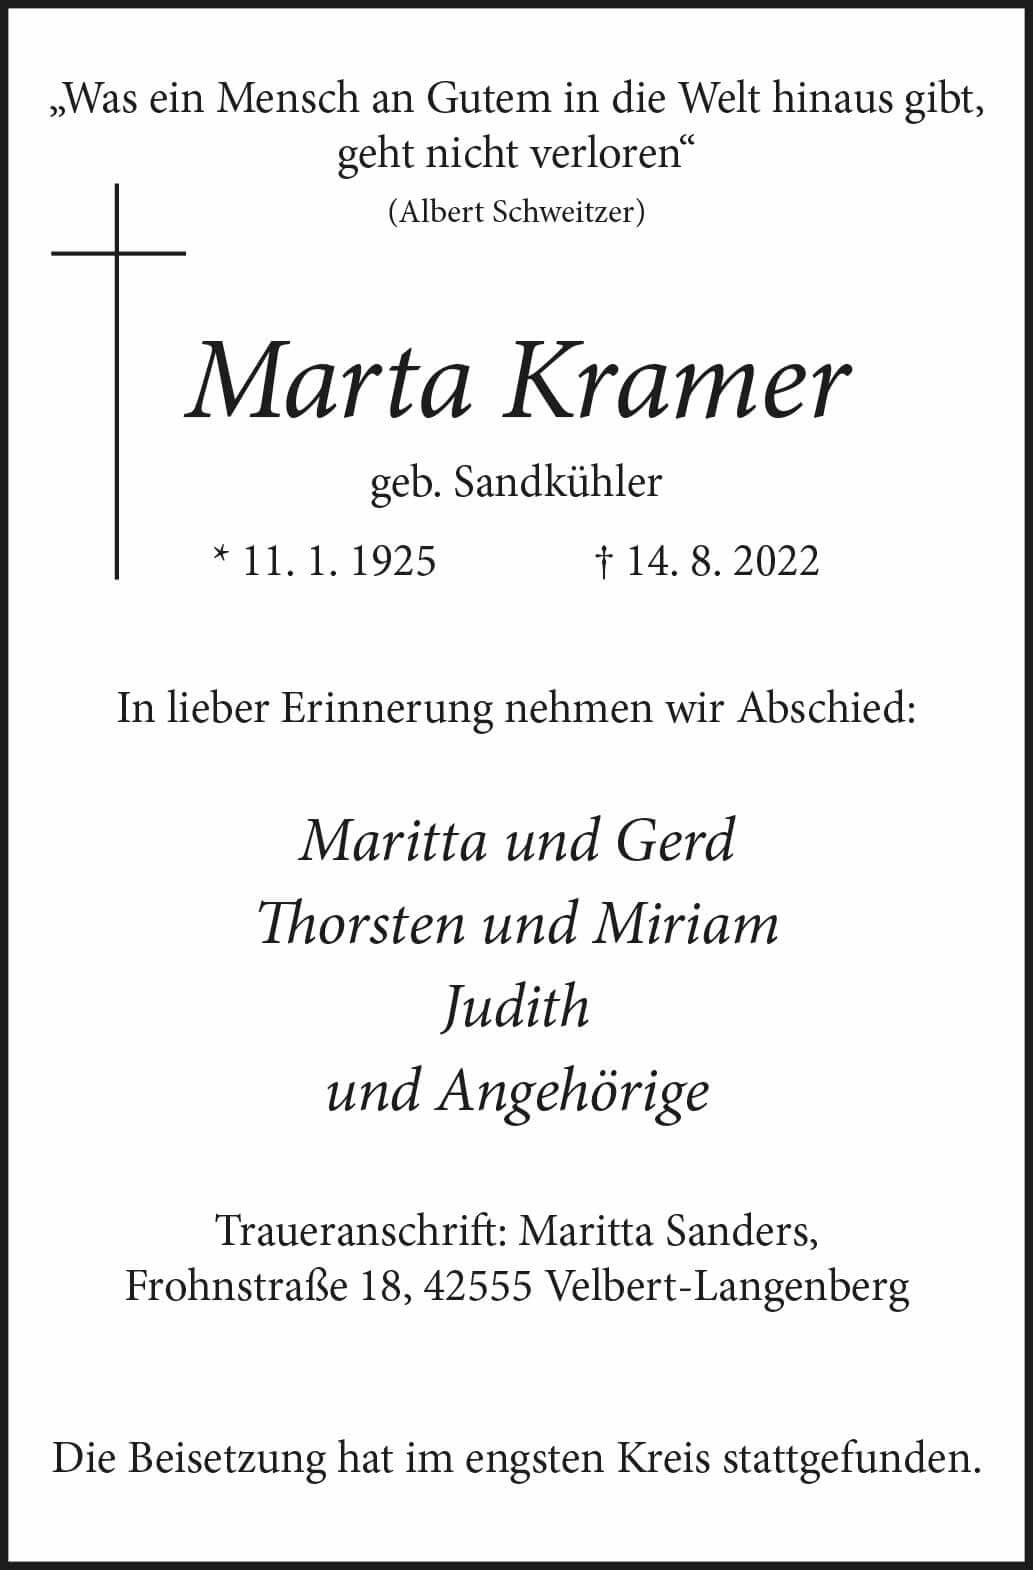 Marta Kramer † 14. 8. 2022